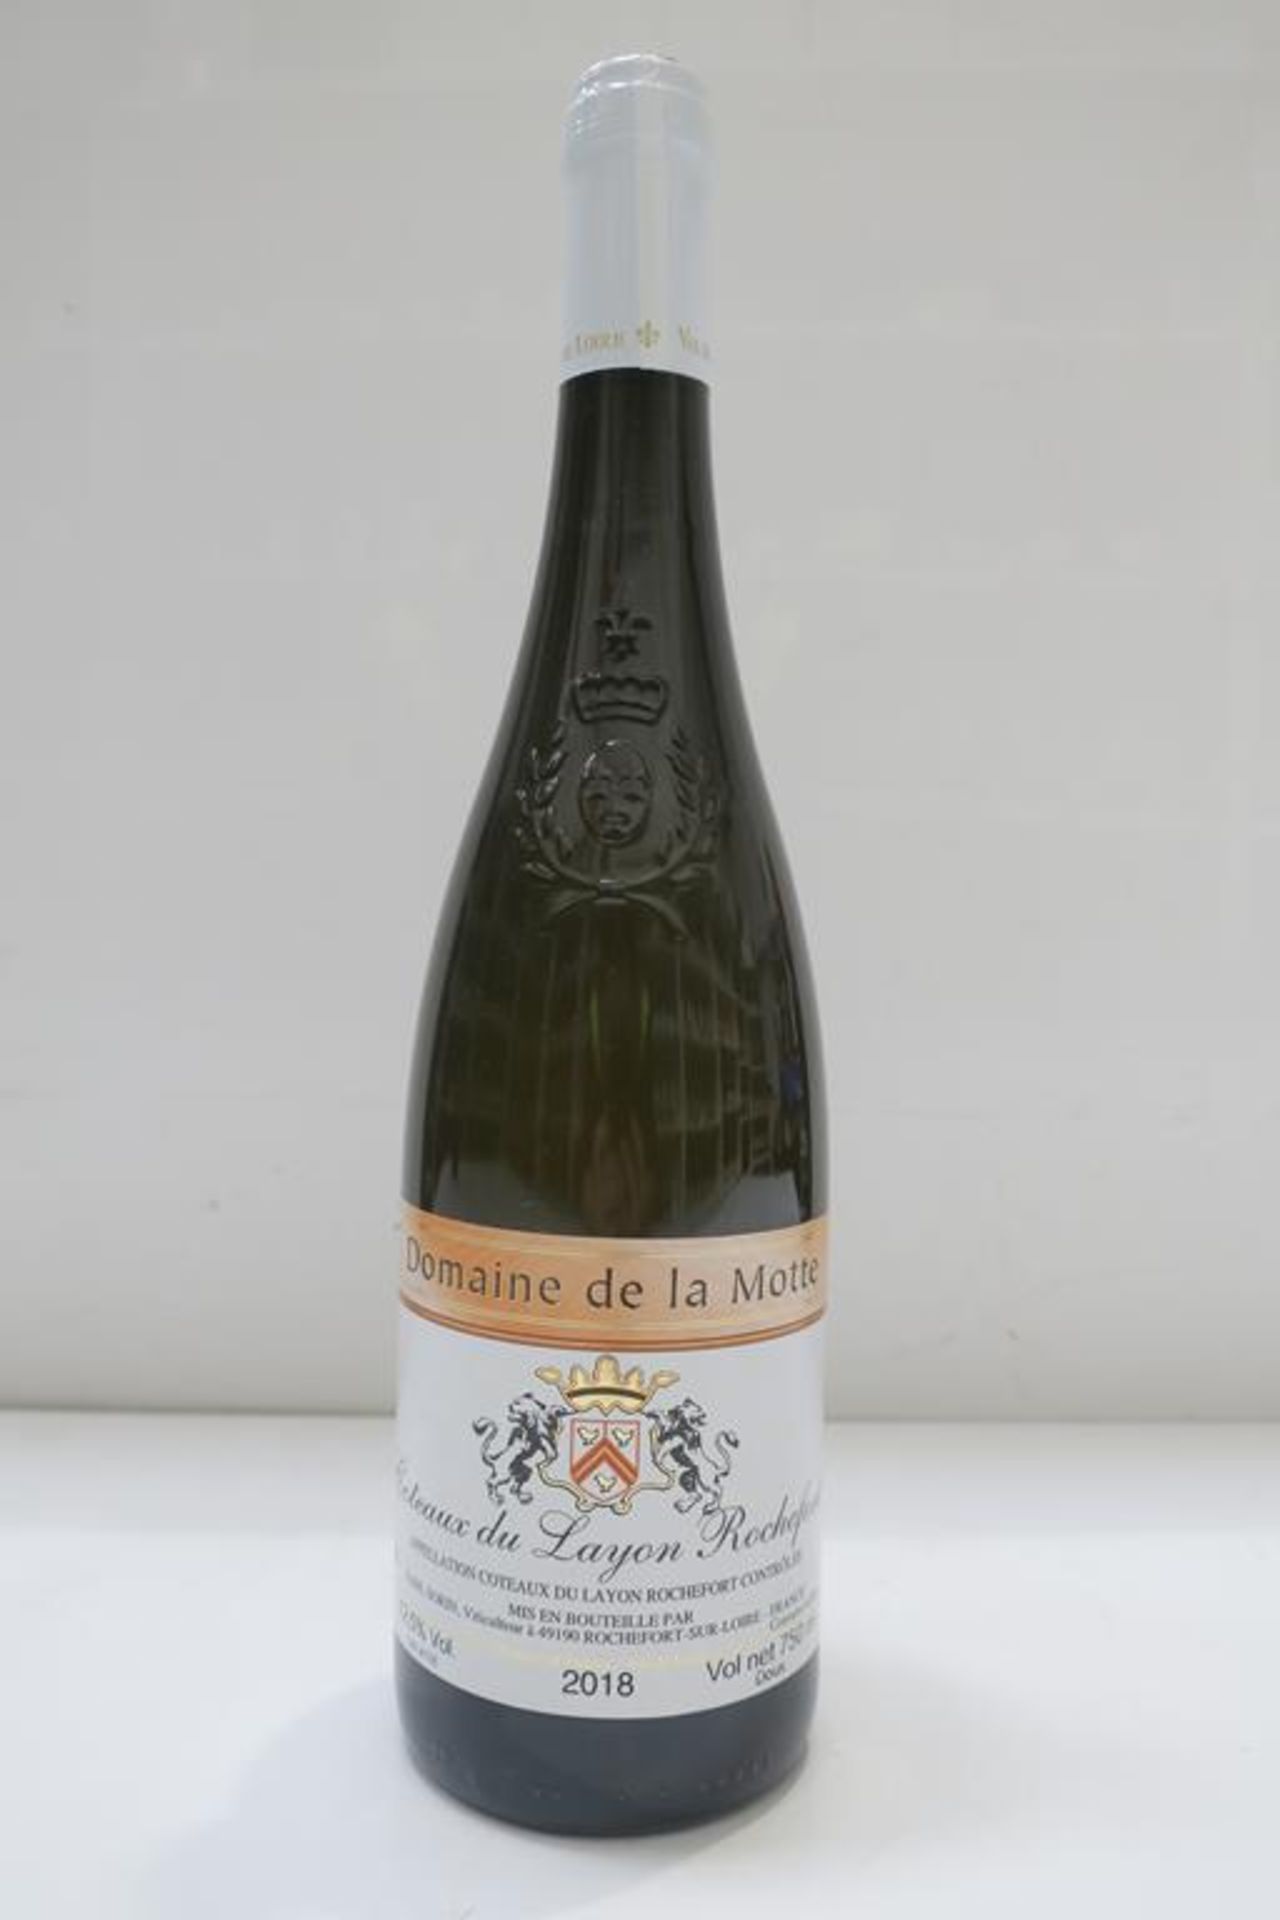 12 x Bottles of Domaine de la Motte 'Coteaux du Layon Rochefort' 2018 White Wine